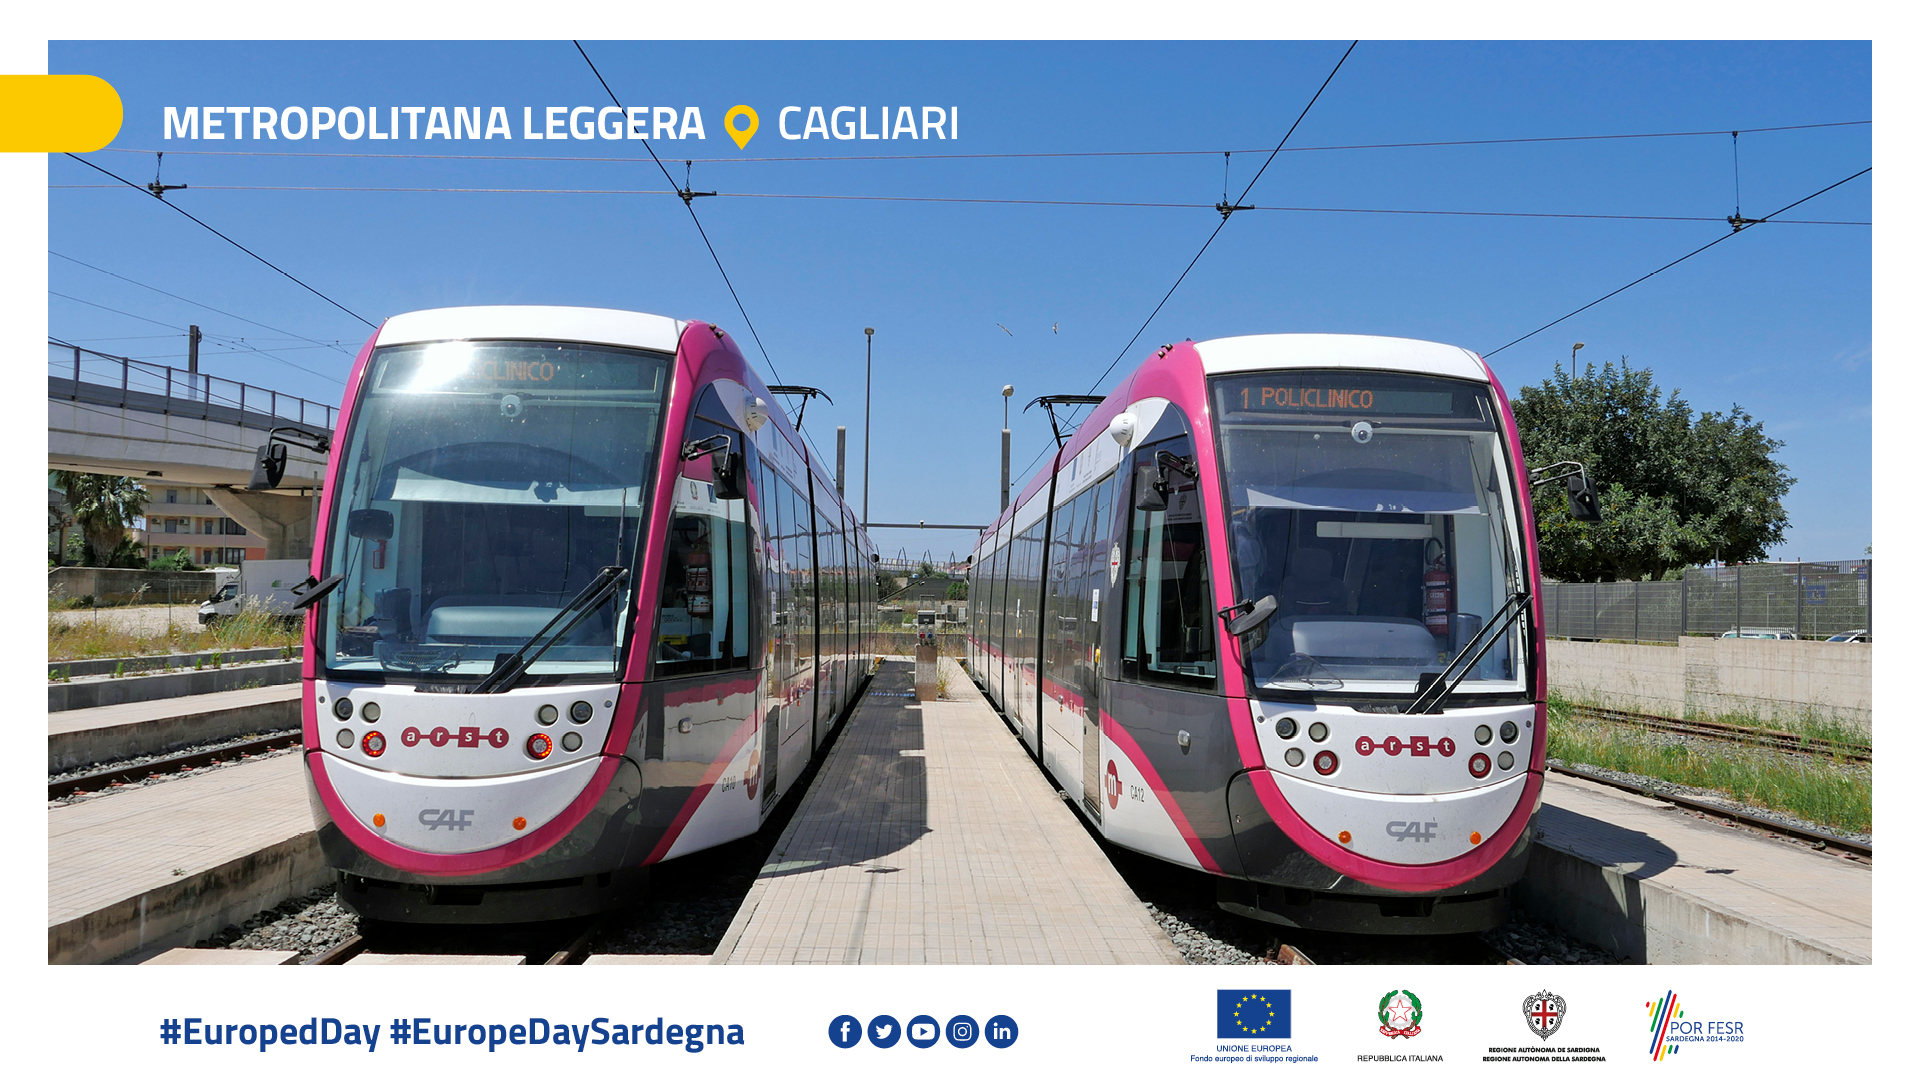 Metropolitana leggera - Cagliari